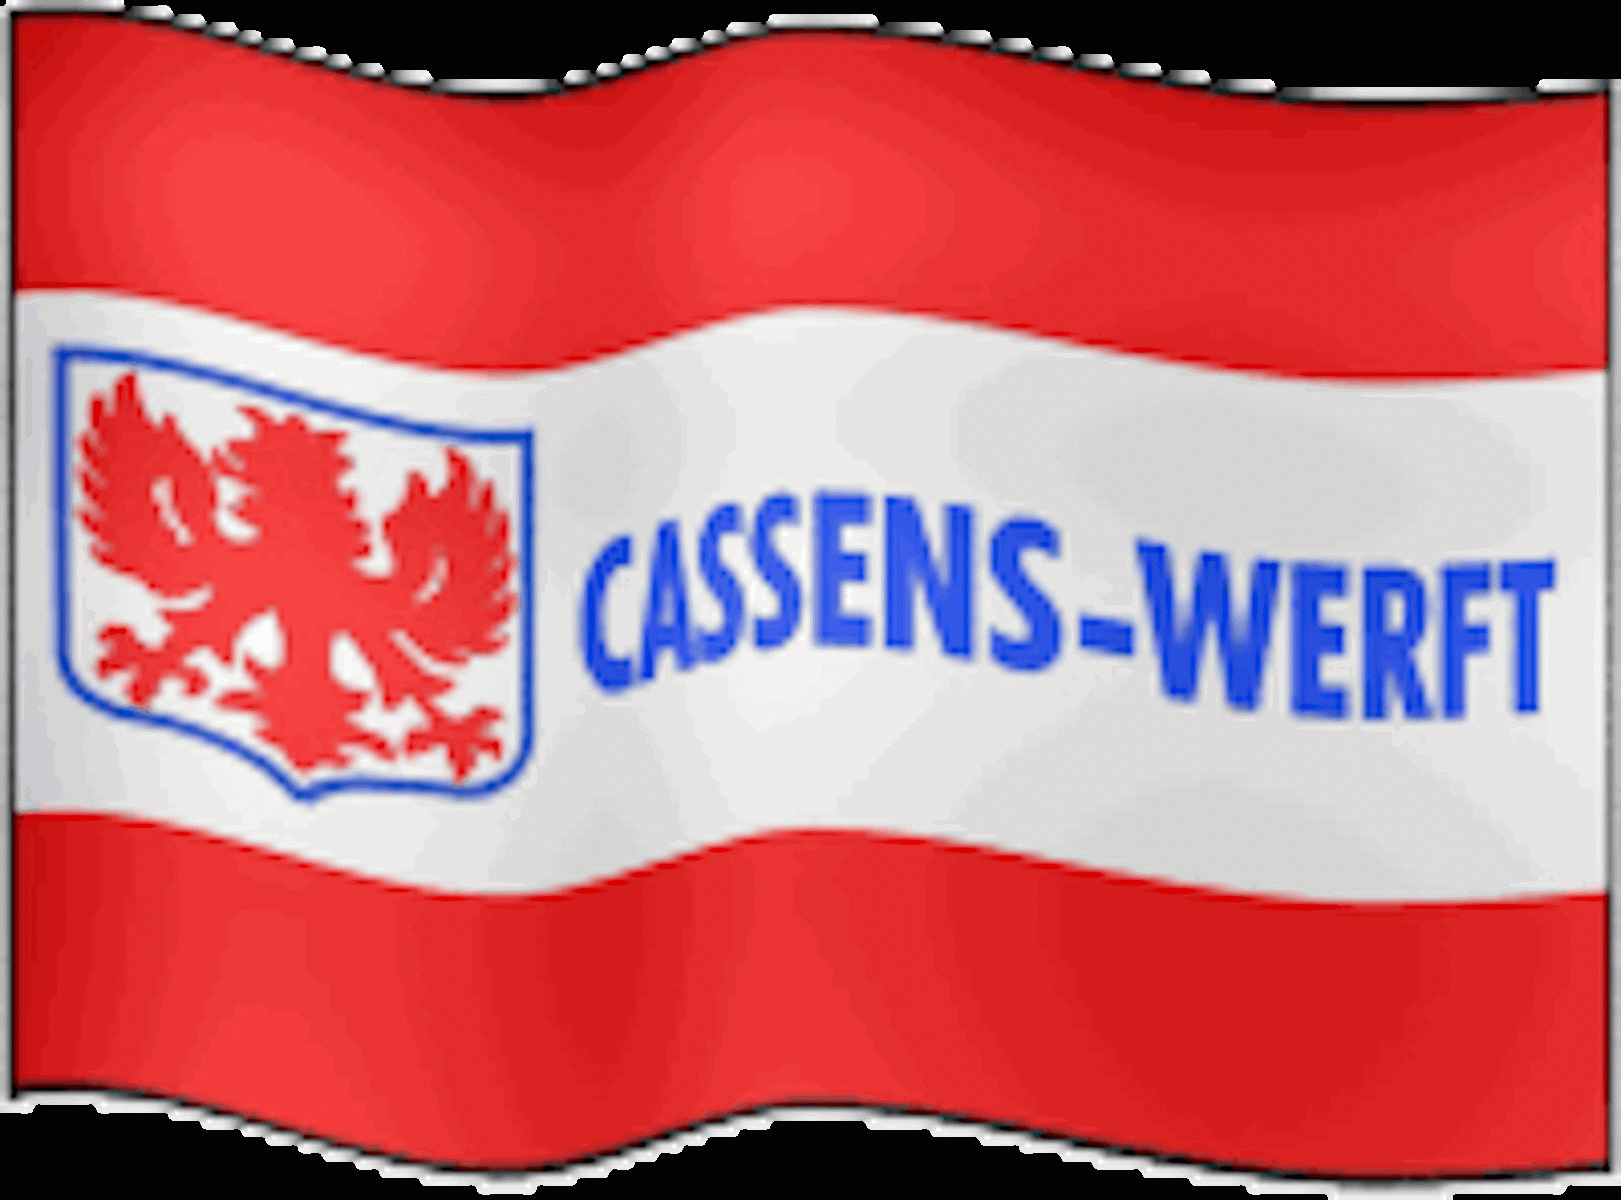 Cassens-Werft-1905